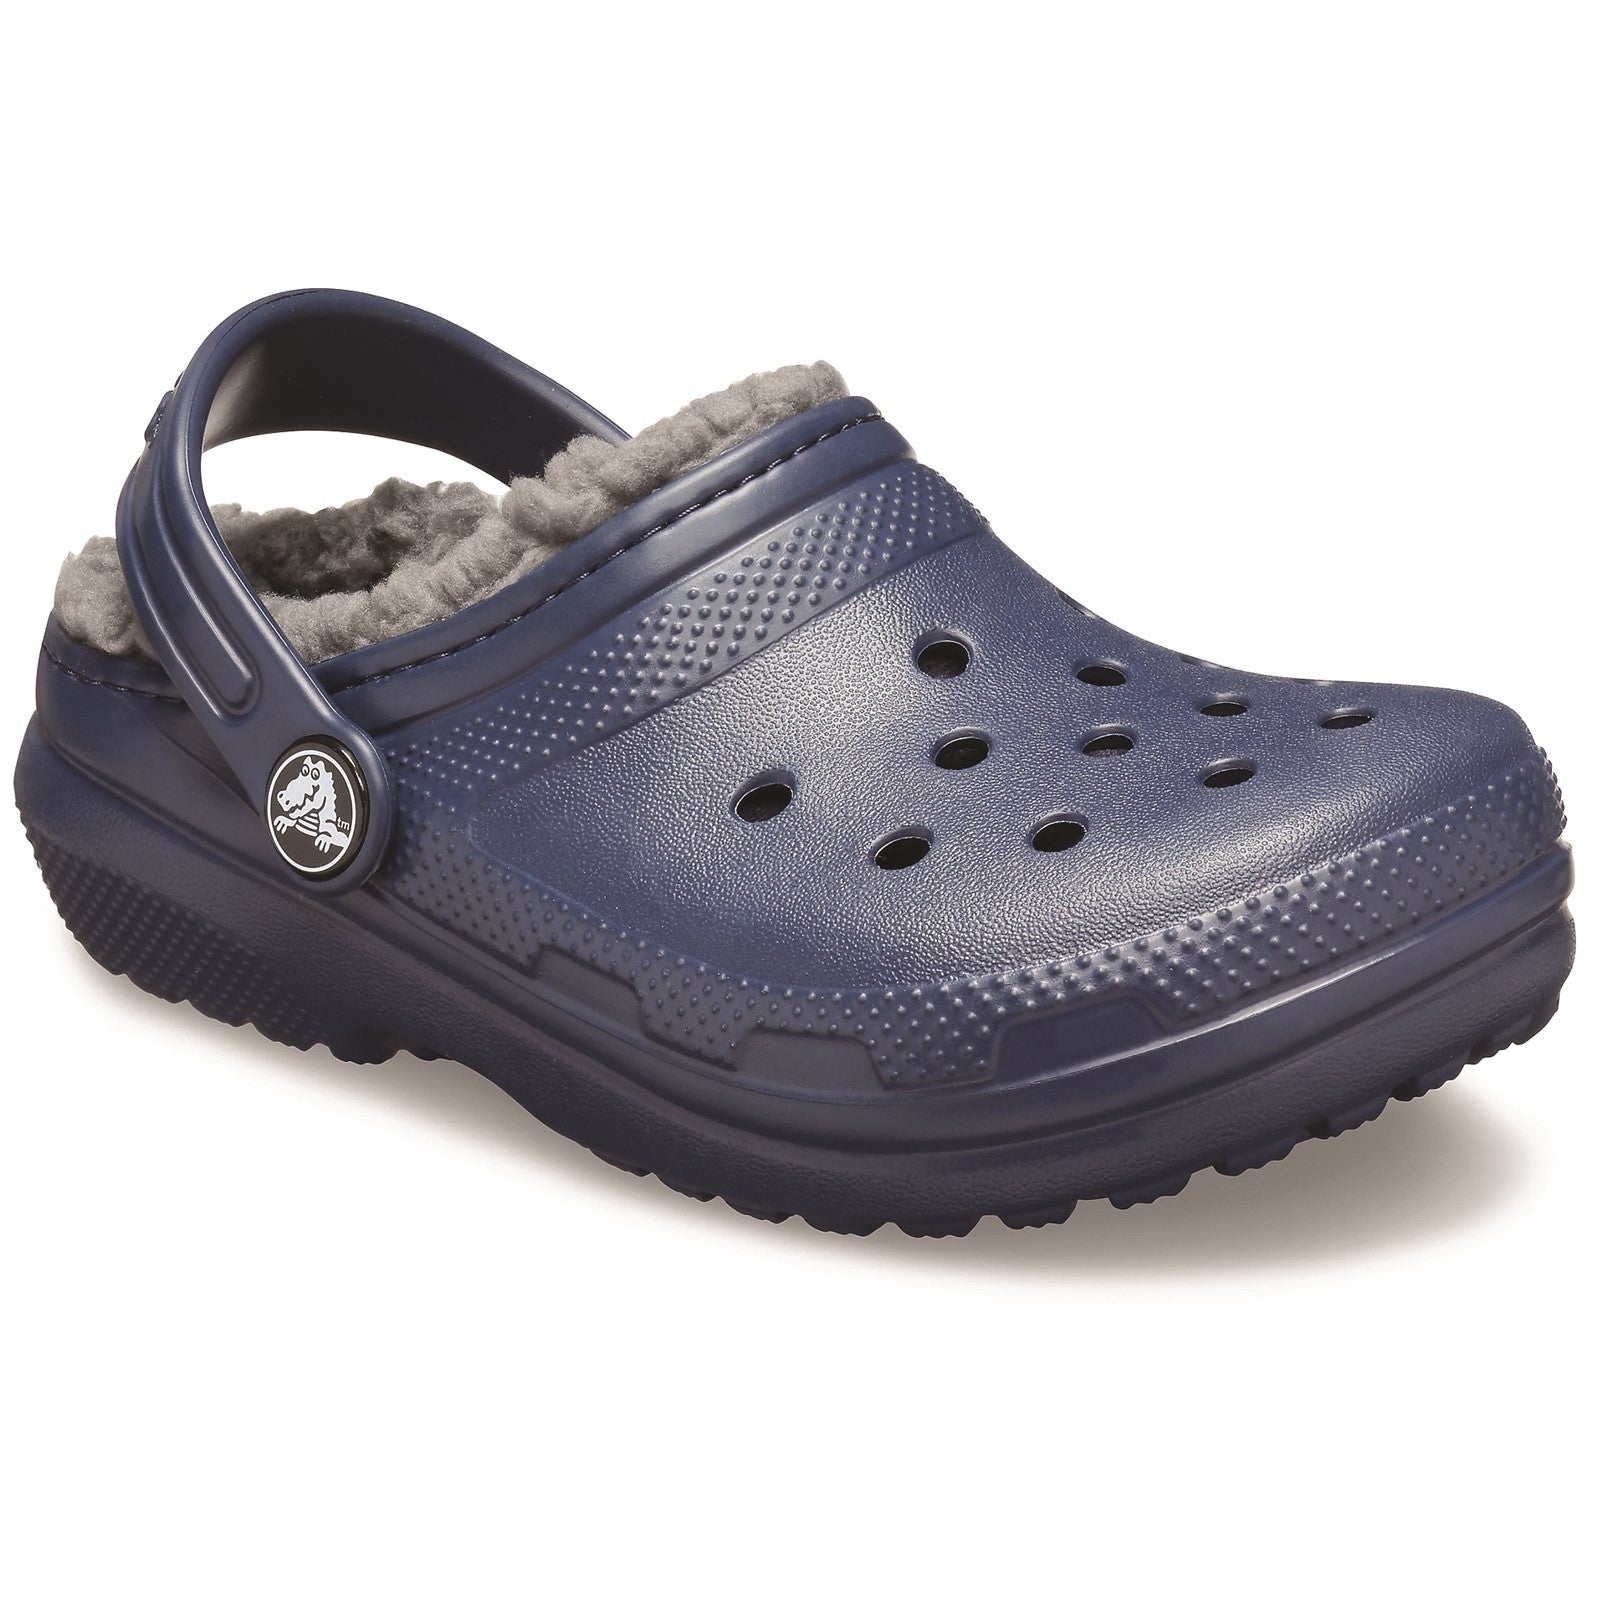 Crocs Classic Lined Slip On Clog Sandals